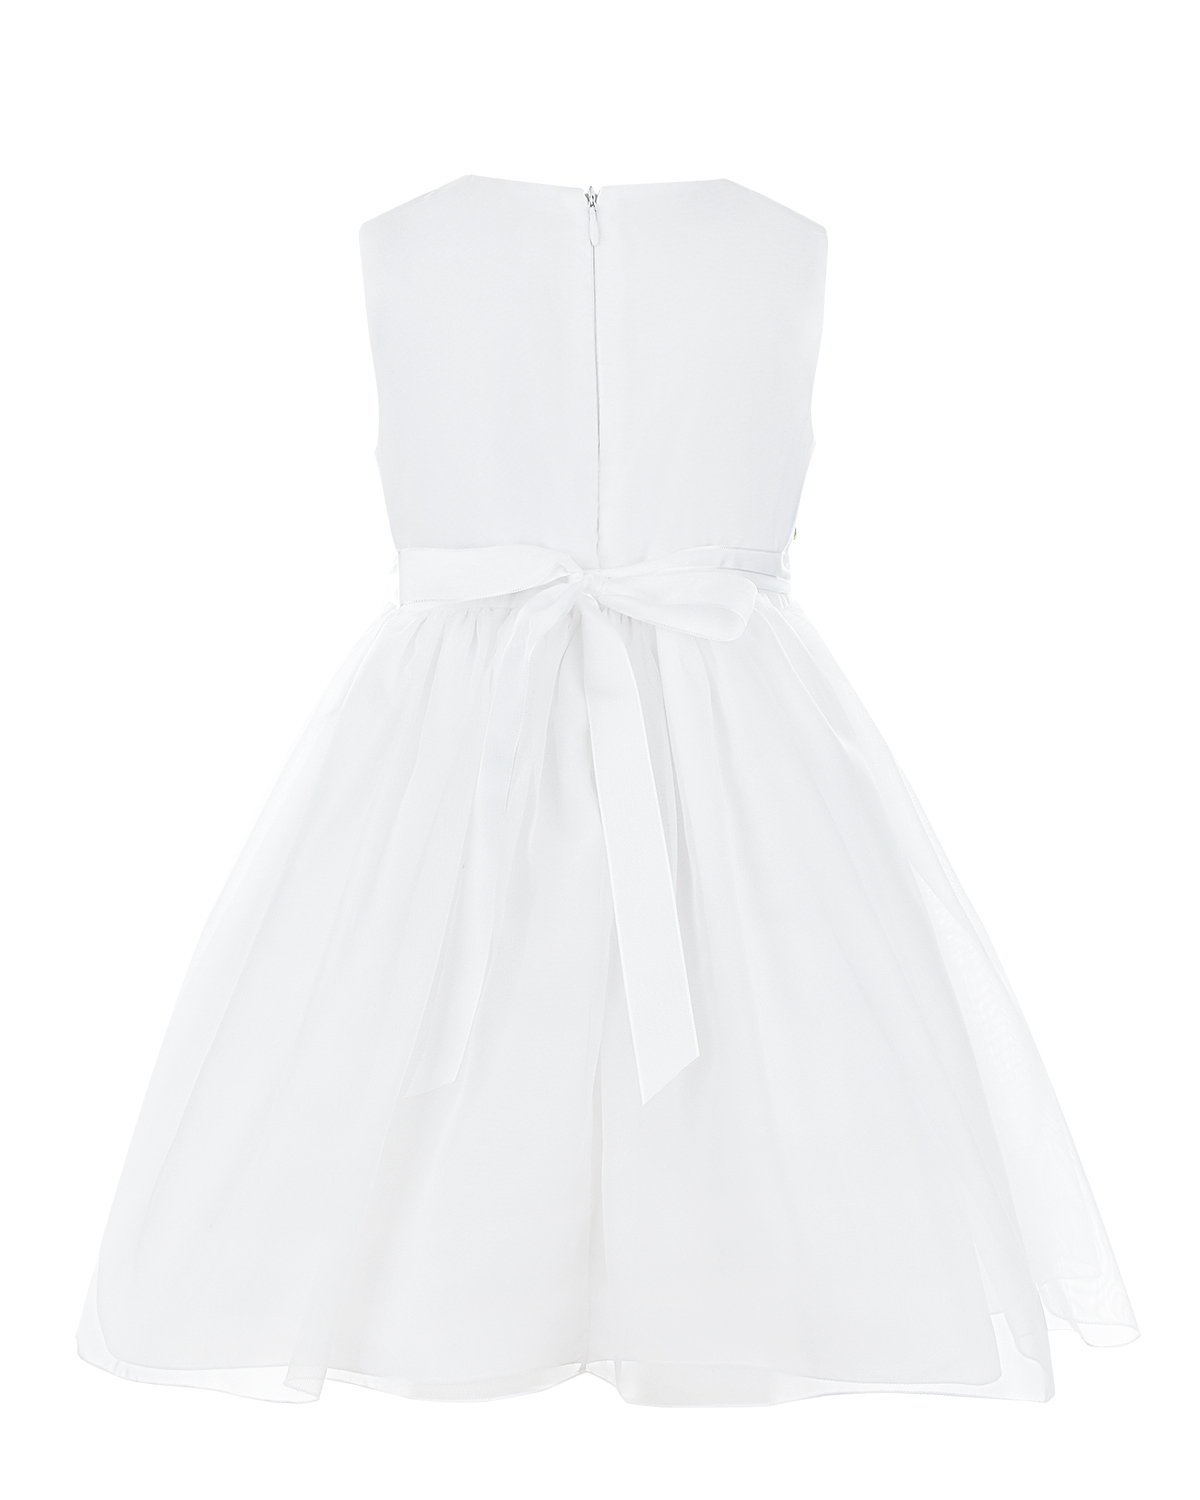 Белое платье с многослойной юбкой Lesy детское - фото 2